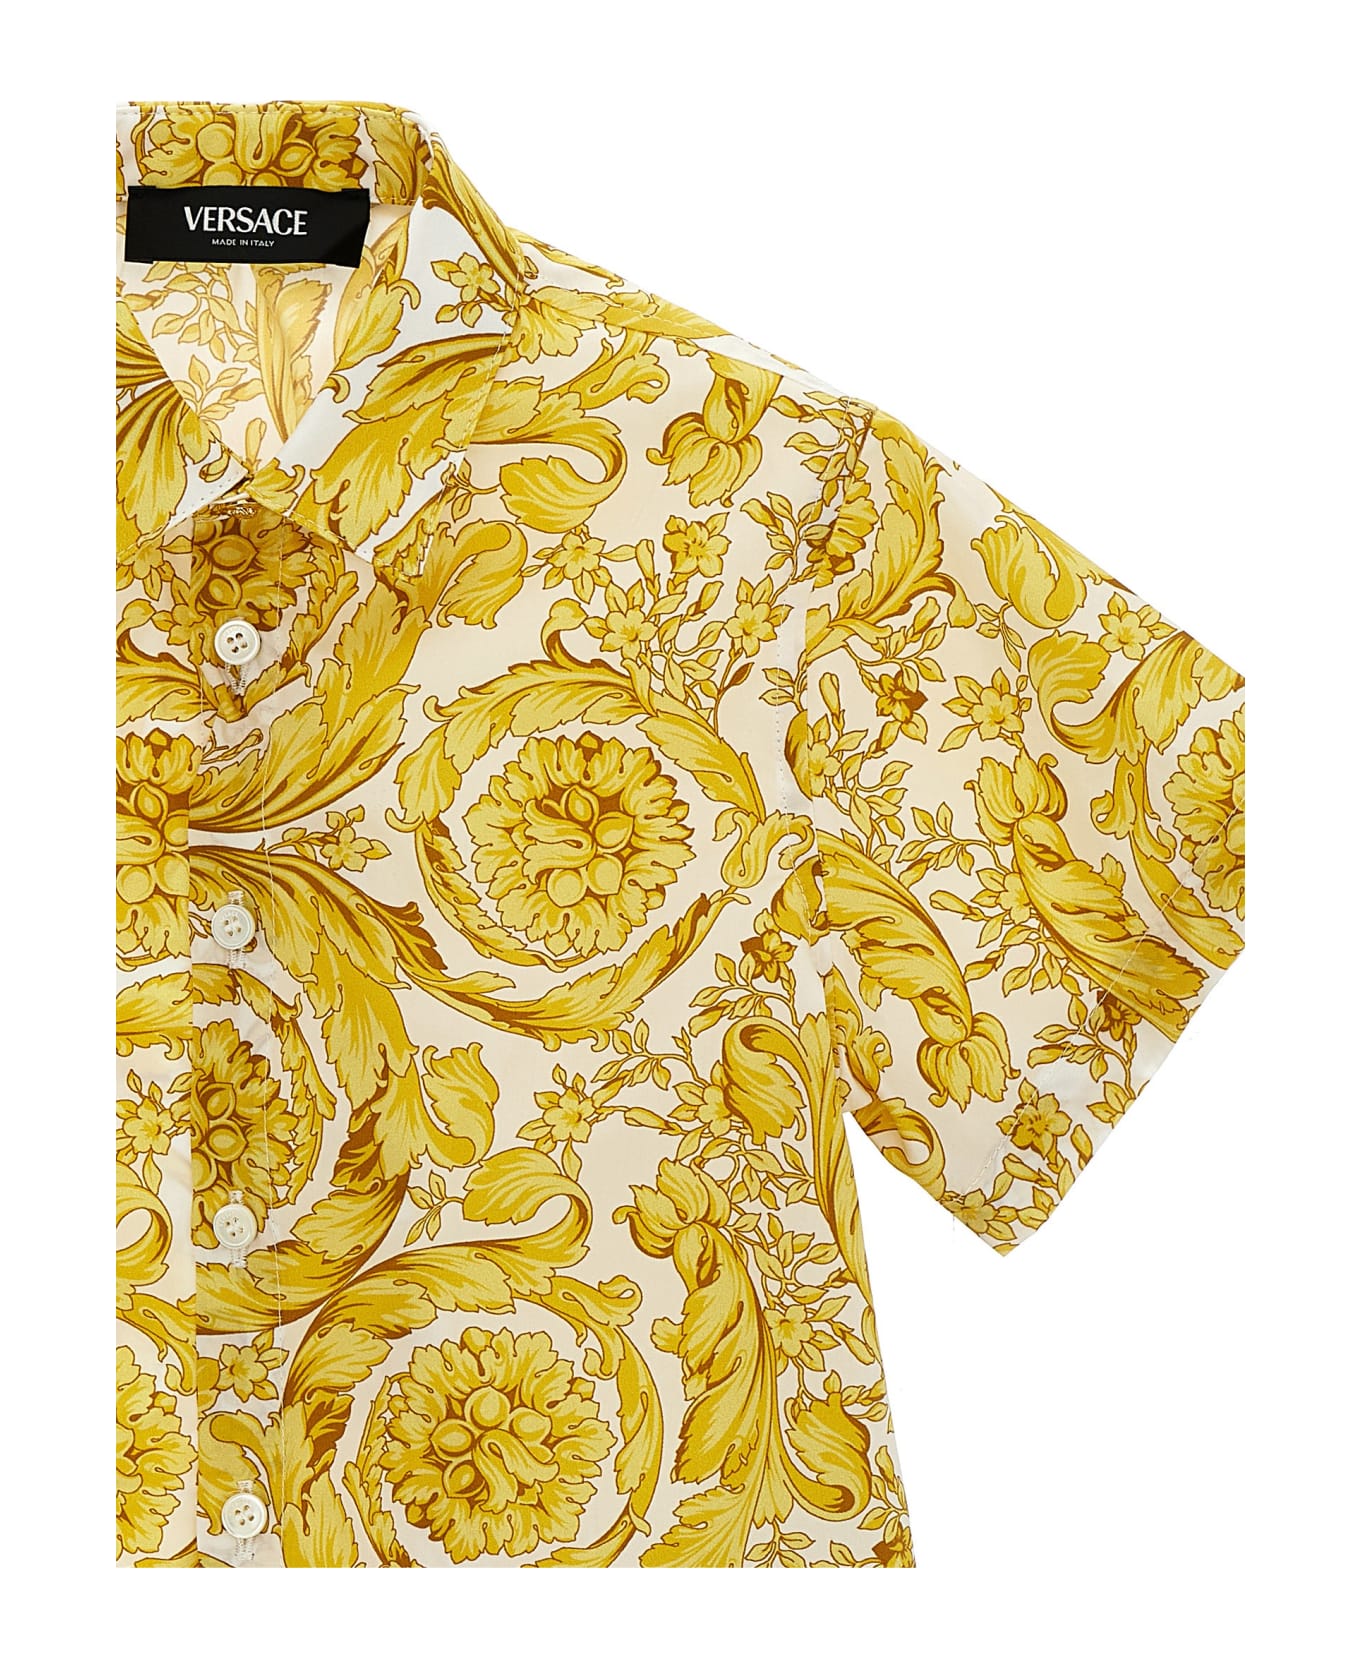 Versace 'barocco' Shirt - Multicolor